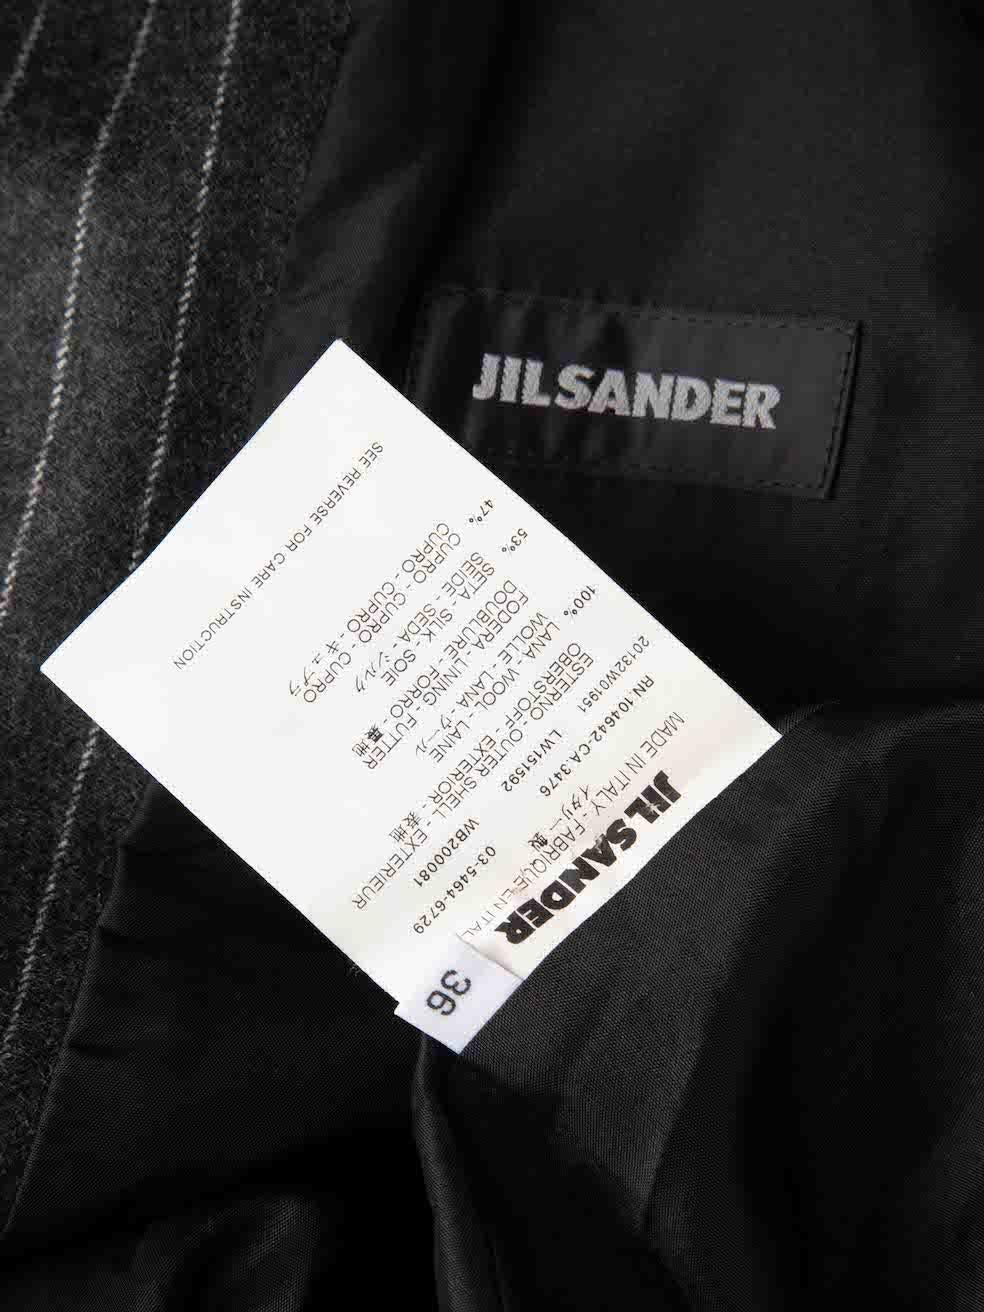 Women's Jil Sander Grey Wool Pinstripe Trousers Suit Size M